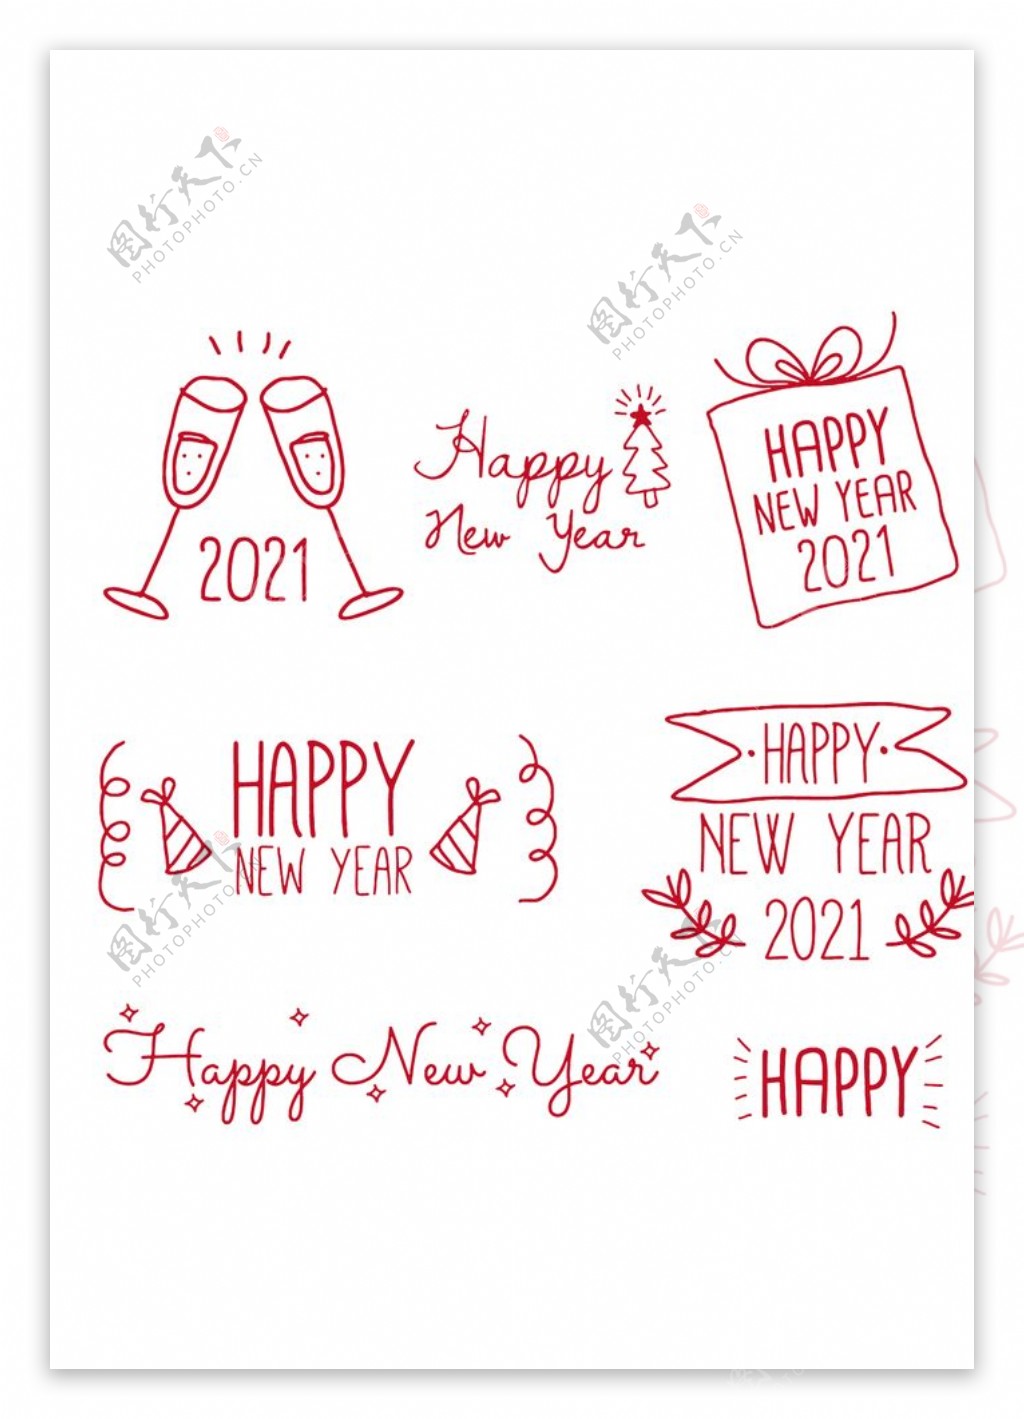 线条画手绘新年快乐字体图片